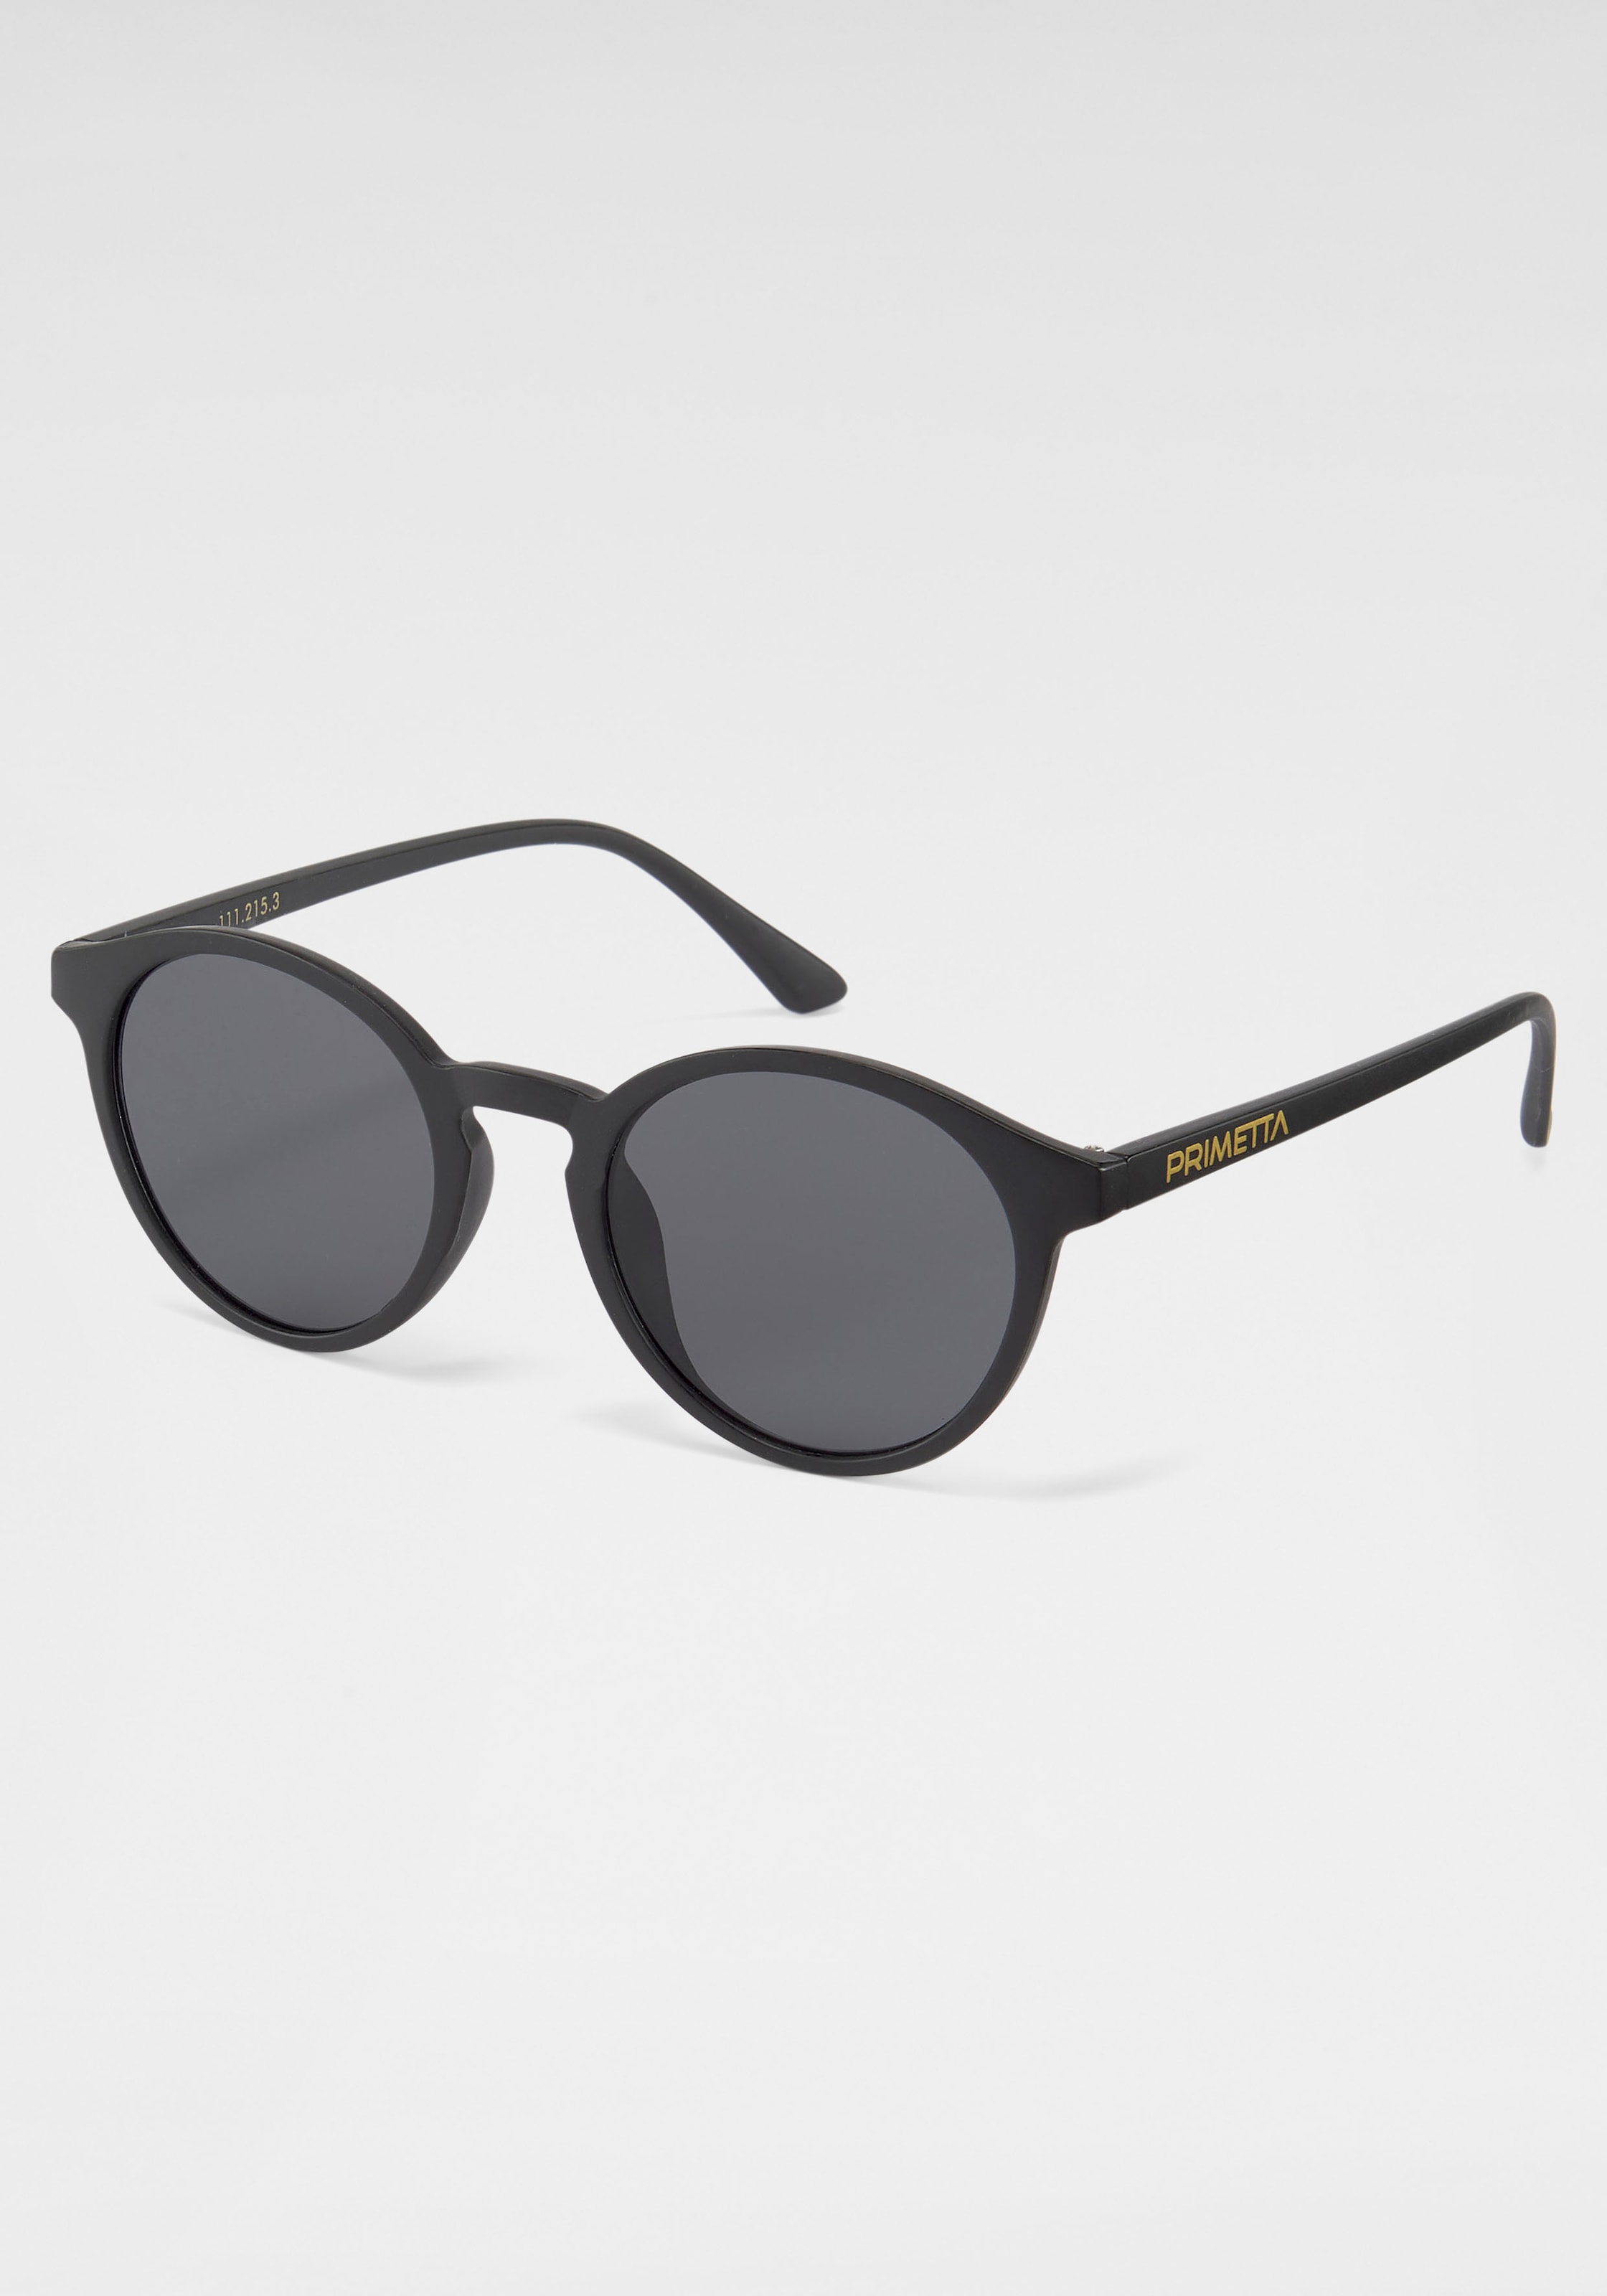 PRIMETTA Eyewear Sonnenbrille Online OTTO Shop im